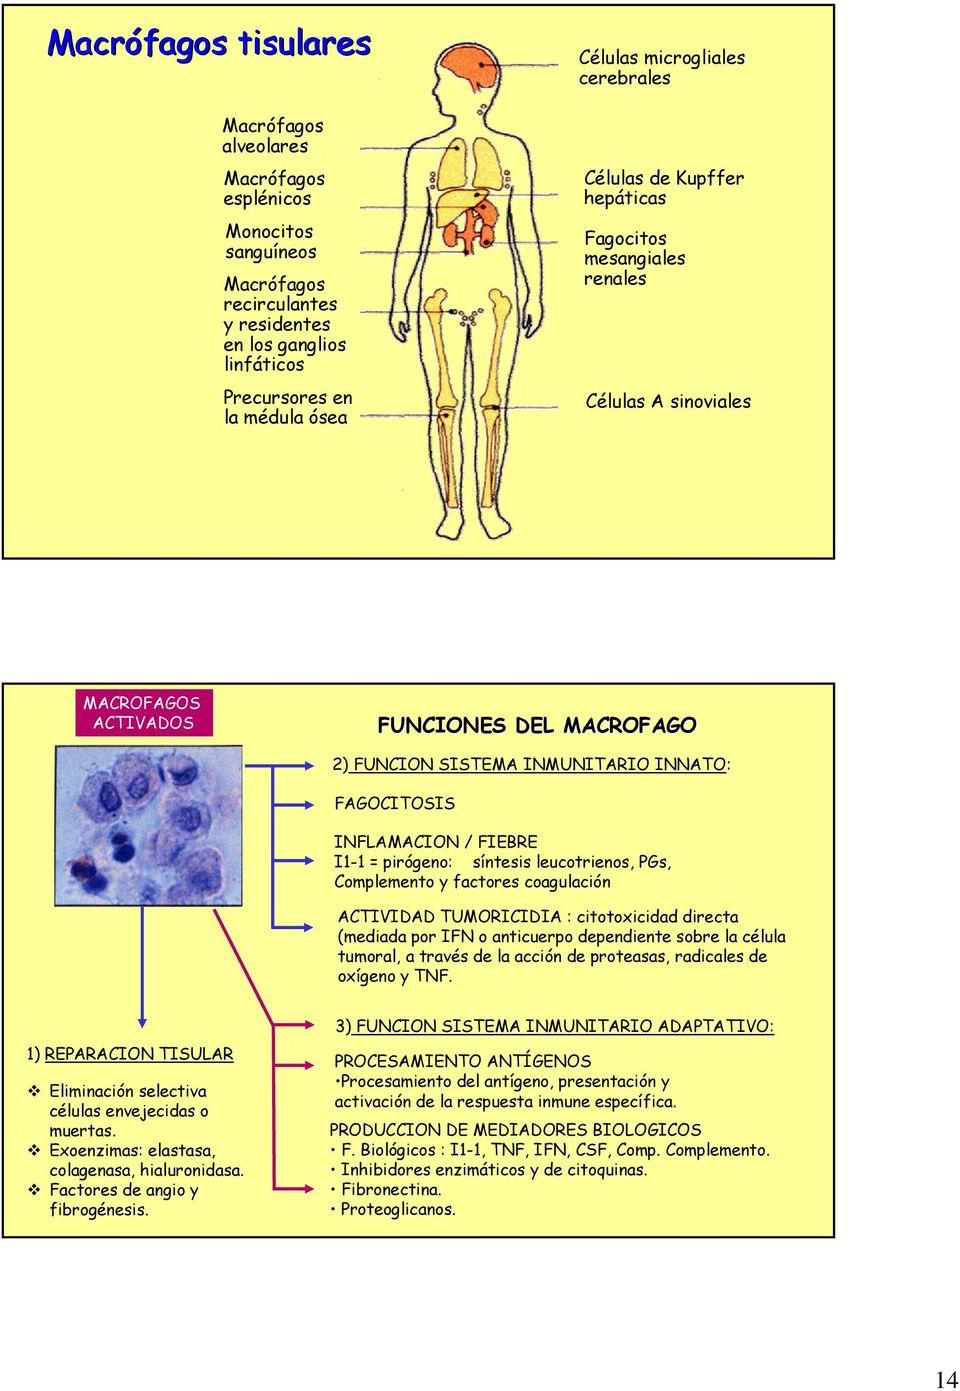 INFLAMACION / FIEBRE I1-1 = pirógeno: síntesis leucotrienos, PGs, Complemento y factores coagulación ACTIVIDAD TUMORICIDIA : citotoxicidad directa (mediada por IFN o anticuerpo dependiente sobre la